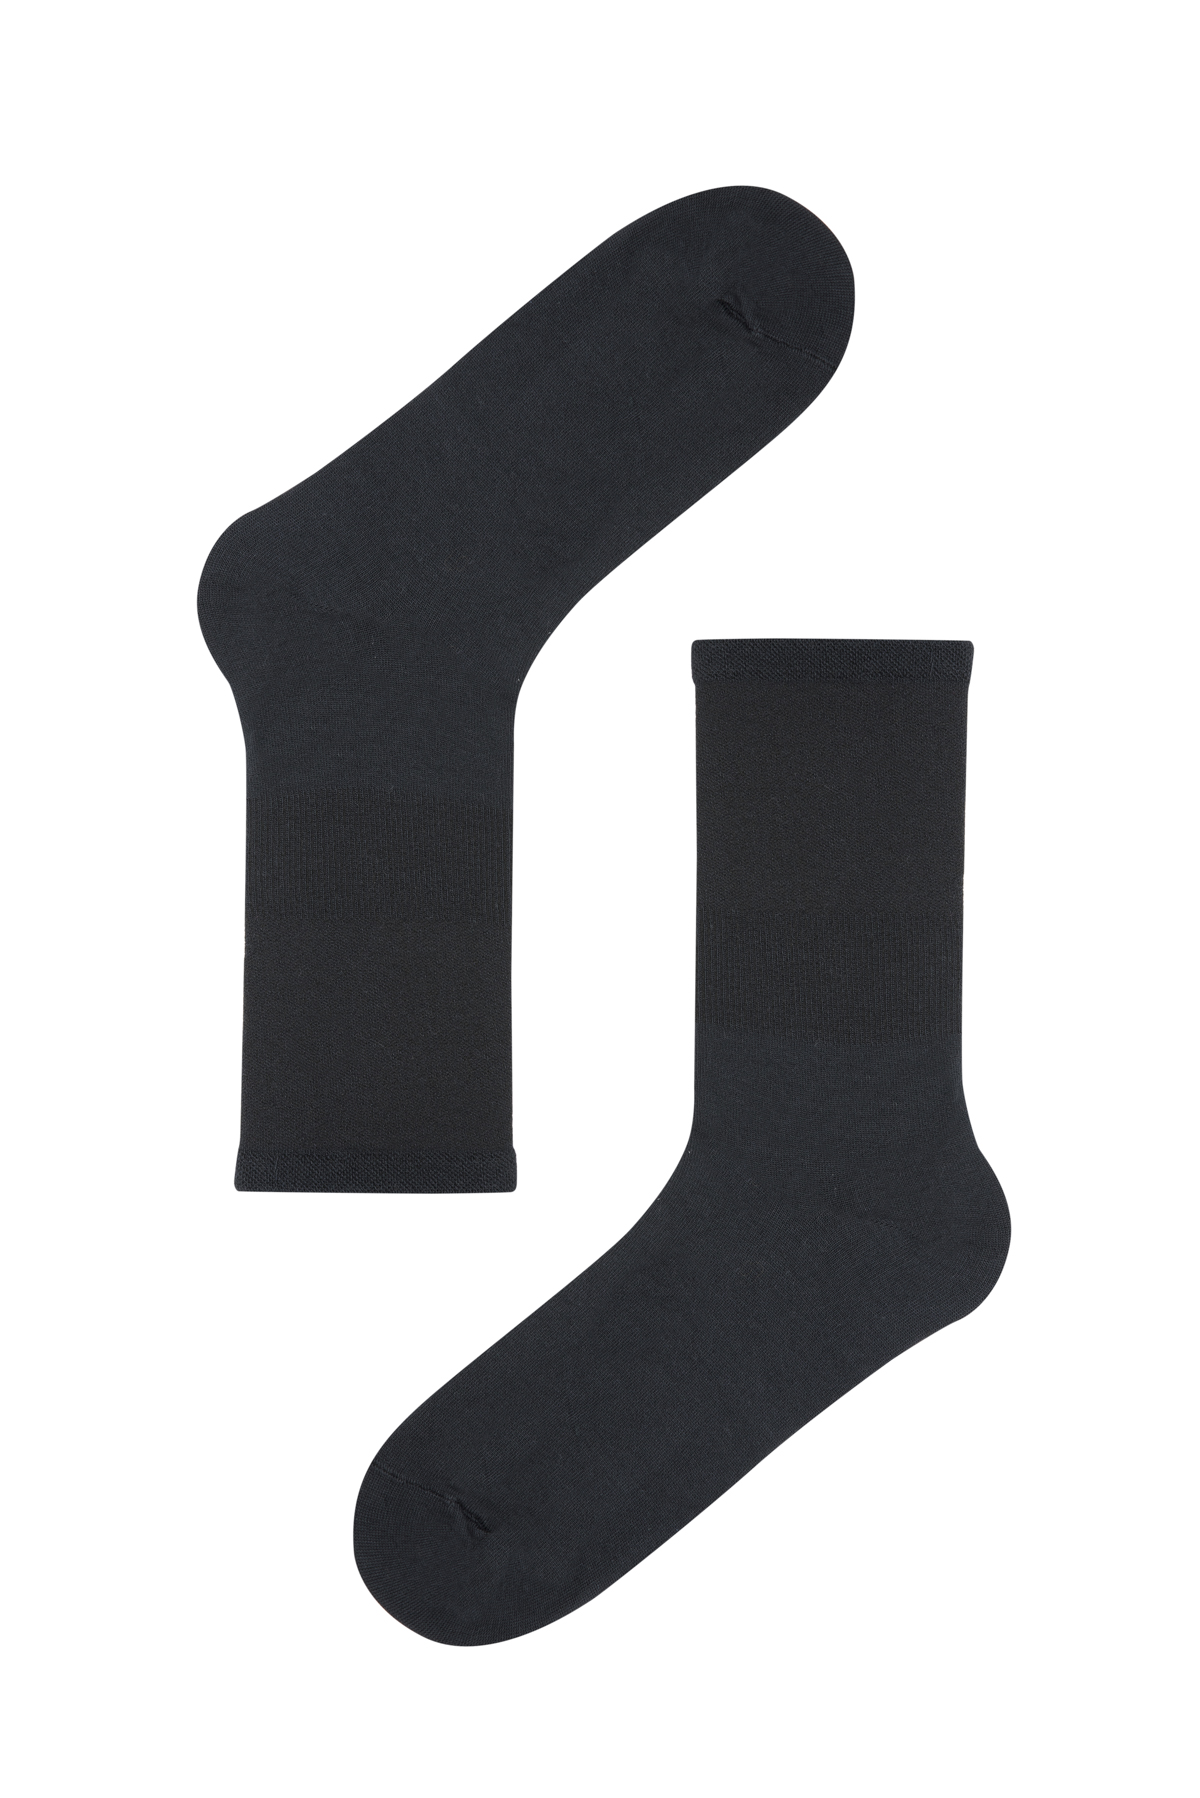 Penti Siyah Soket Çorap. 1